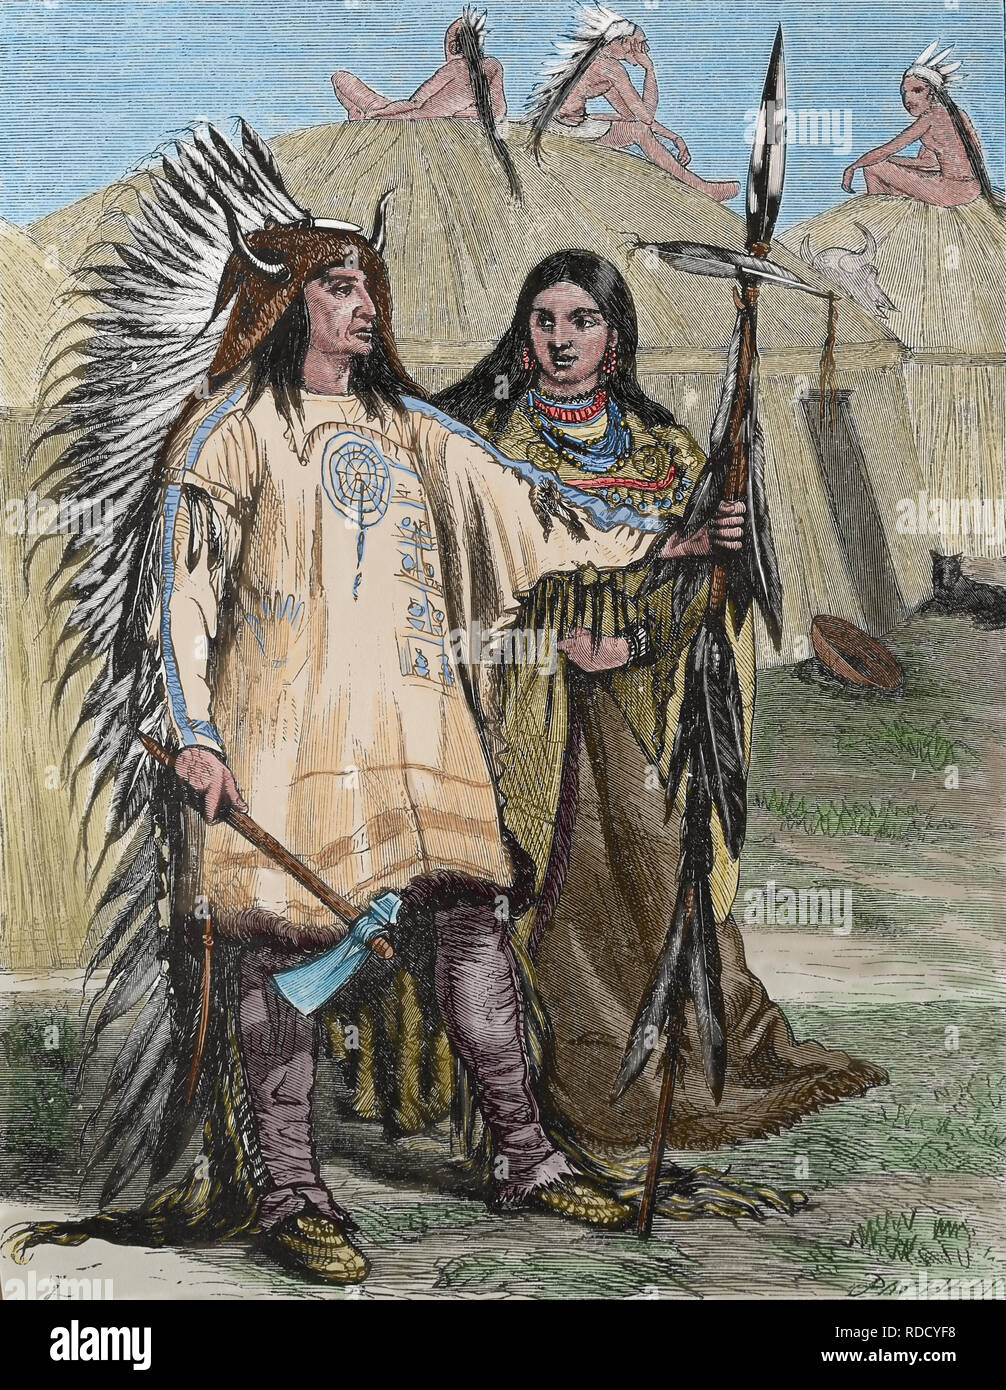 Nordamerika. Indianer. Gravur, 19. 1880. Stockfoto